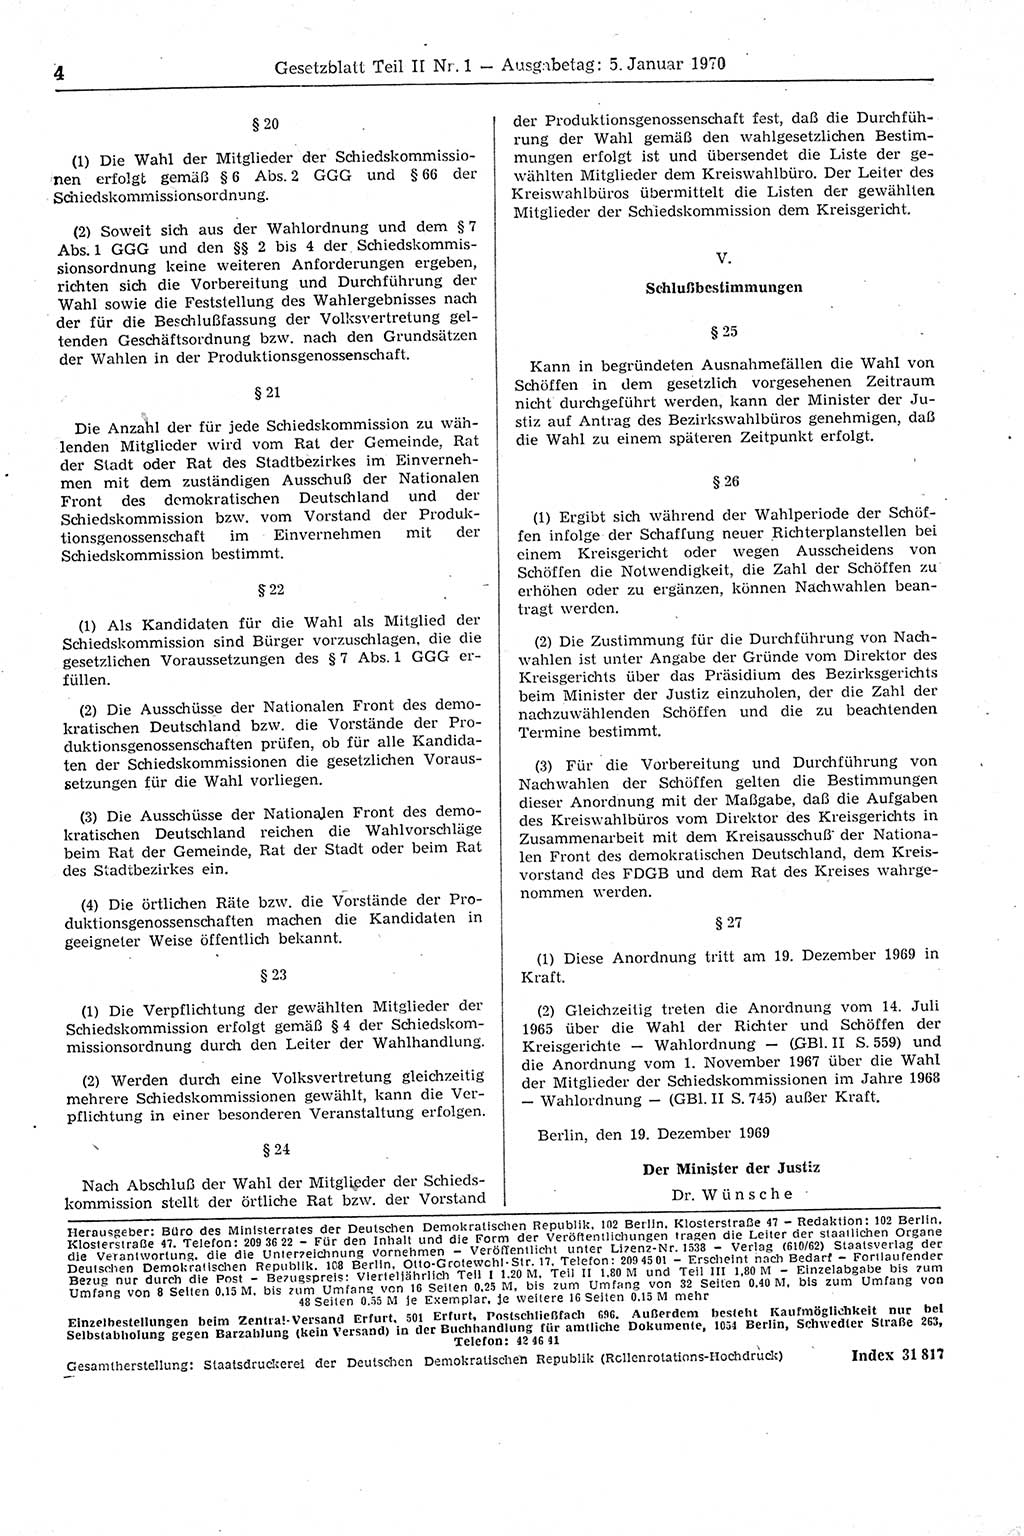 Gesetzblatt (GBl.) der Deutschen Demokratischen Republik (DDR) Teil ⅠⅠ 1970, Seite 4 (GBl. DDR ⅠⅠ 1970, S. 4)